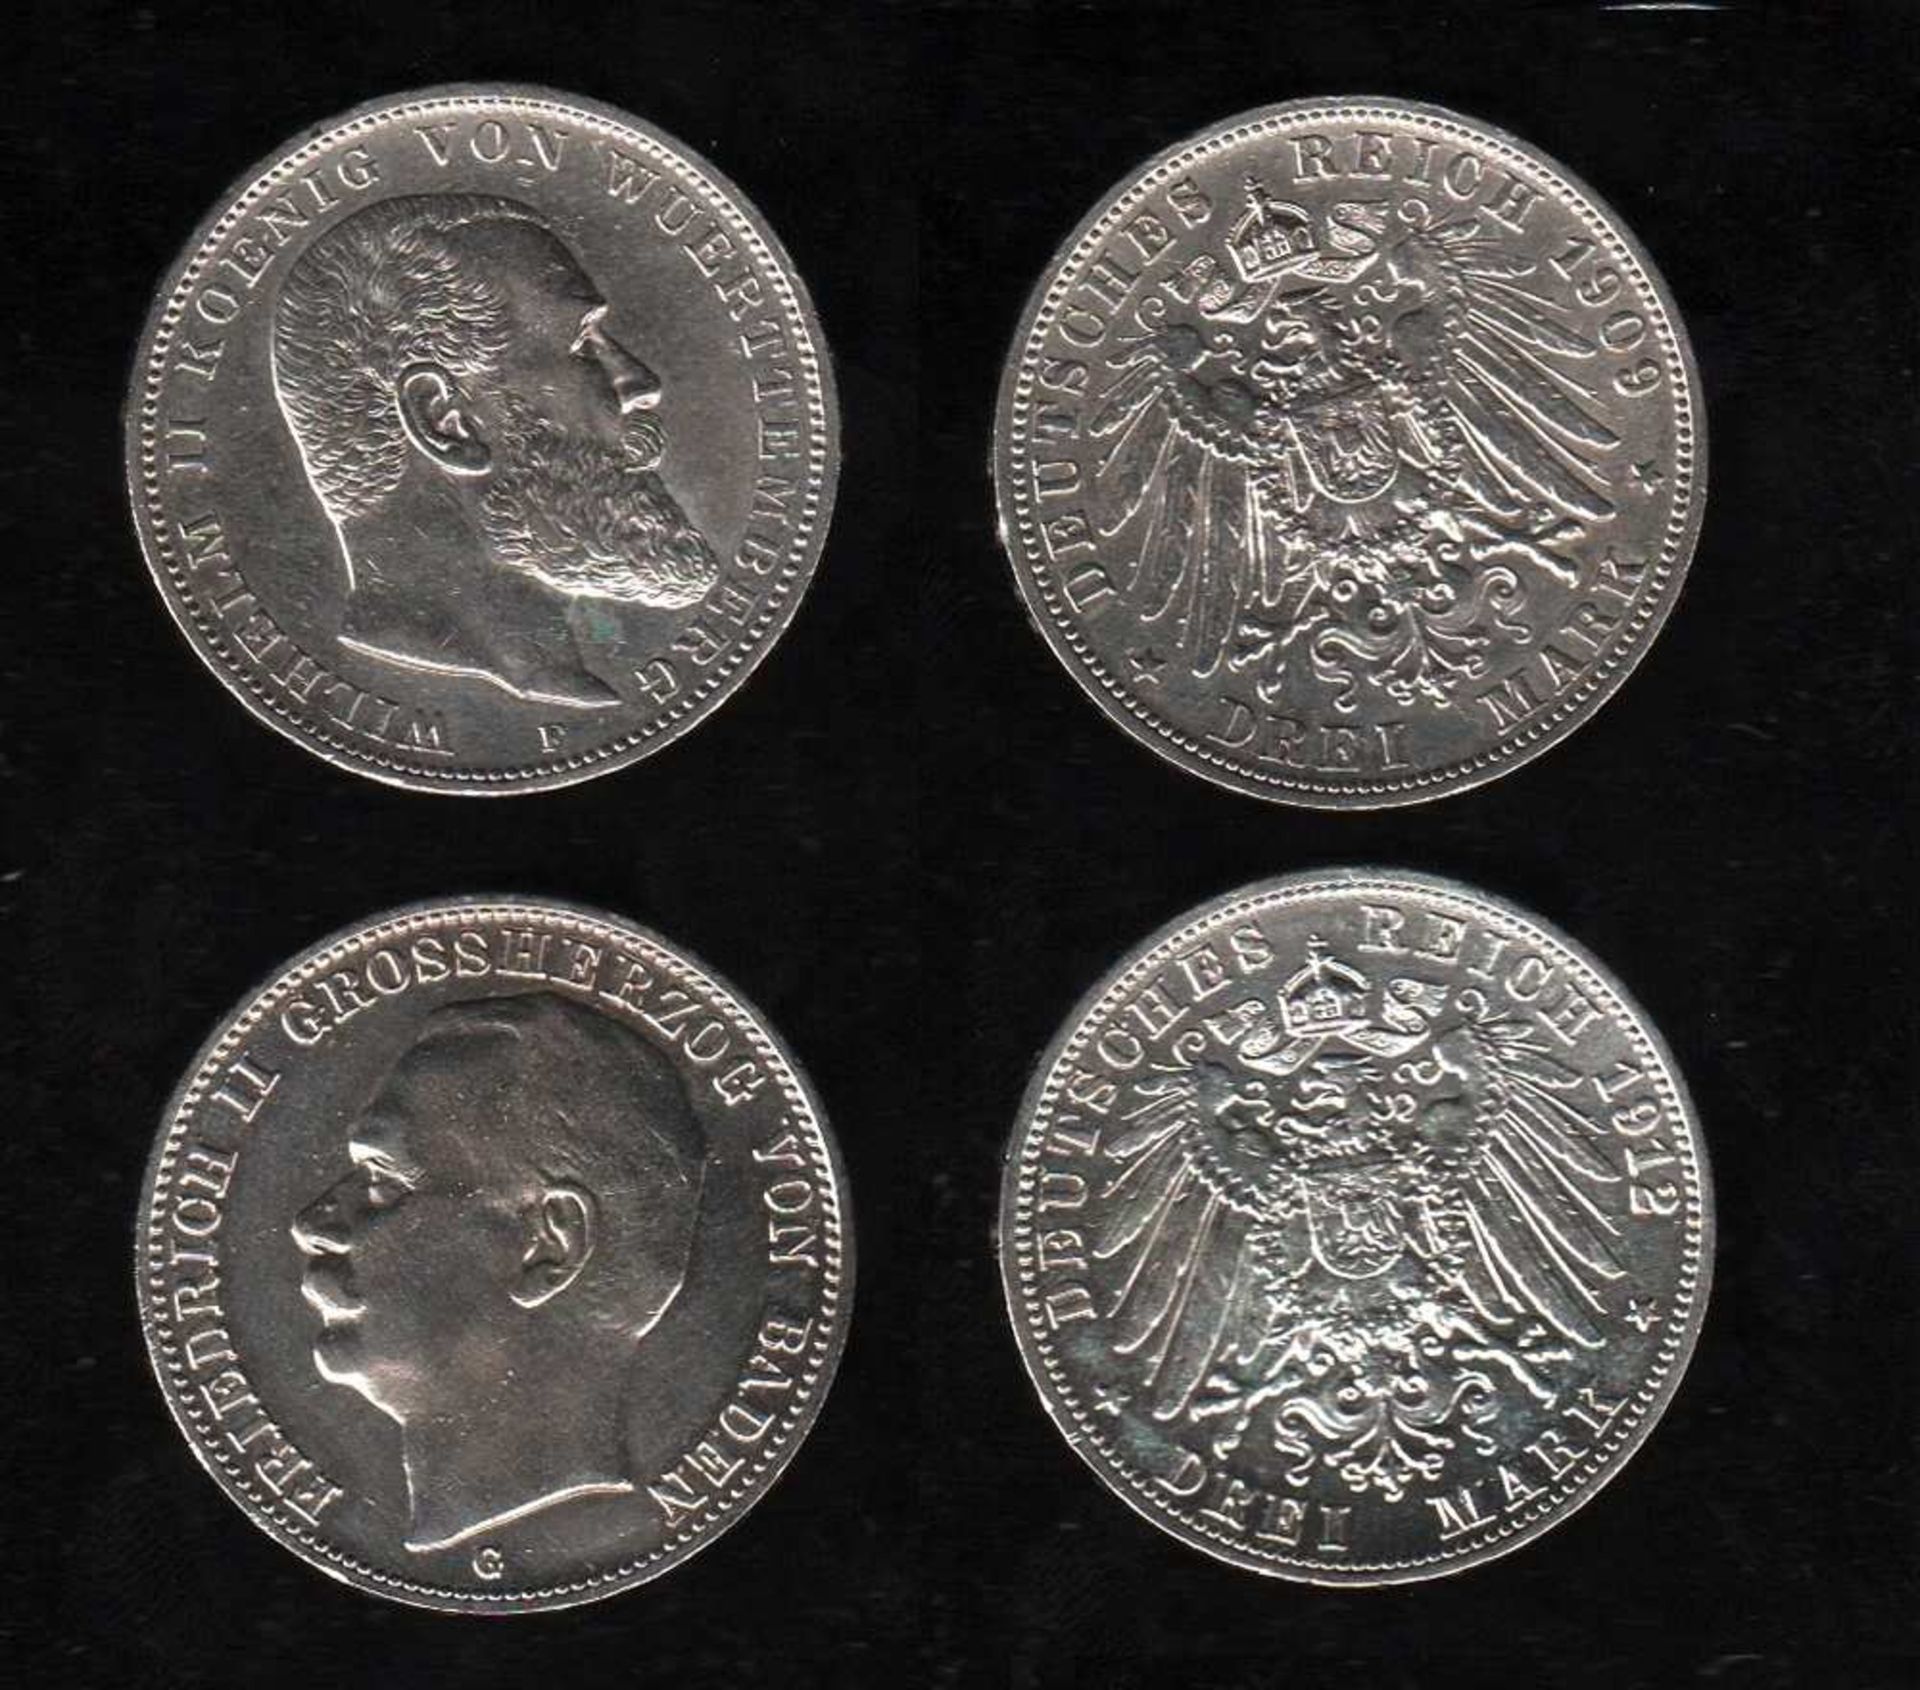 # Deutsches Reich. Silbermünze. 3 Mark. Wilhelm II., König von Württemberg. F 1909. Vorderseite: